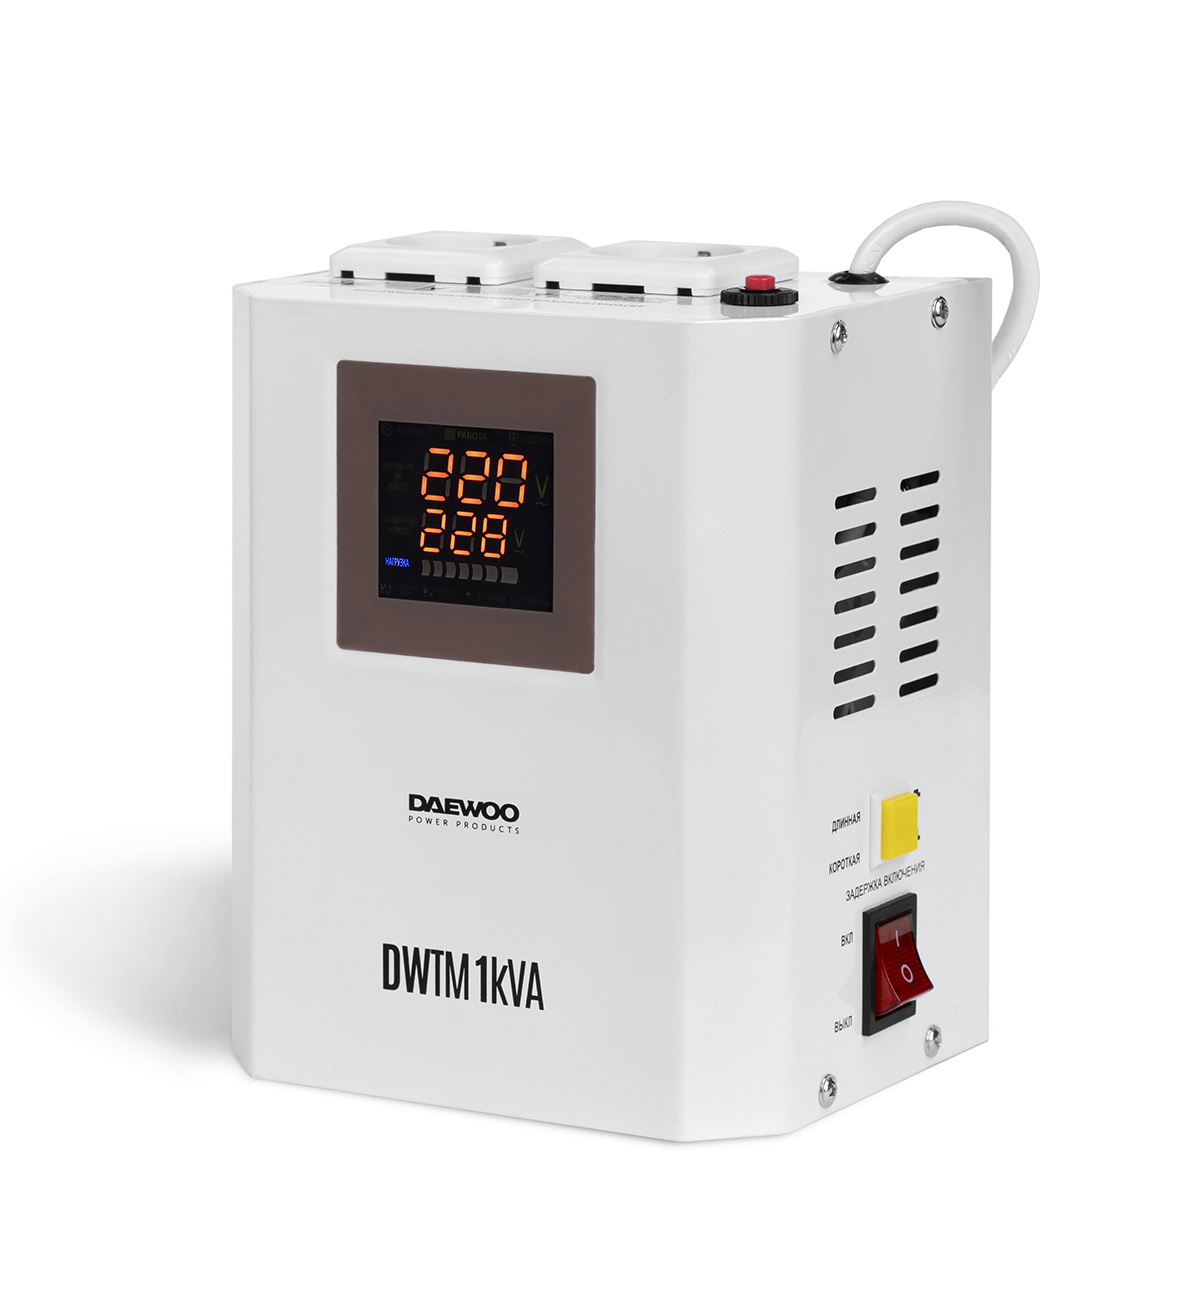 Стабилизатор напряжения настенный DAEWOO DW-TM1kVA стабилизатор 1ф 500ва цифровой настенный от 110в до 270в boiler iek